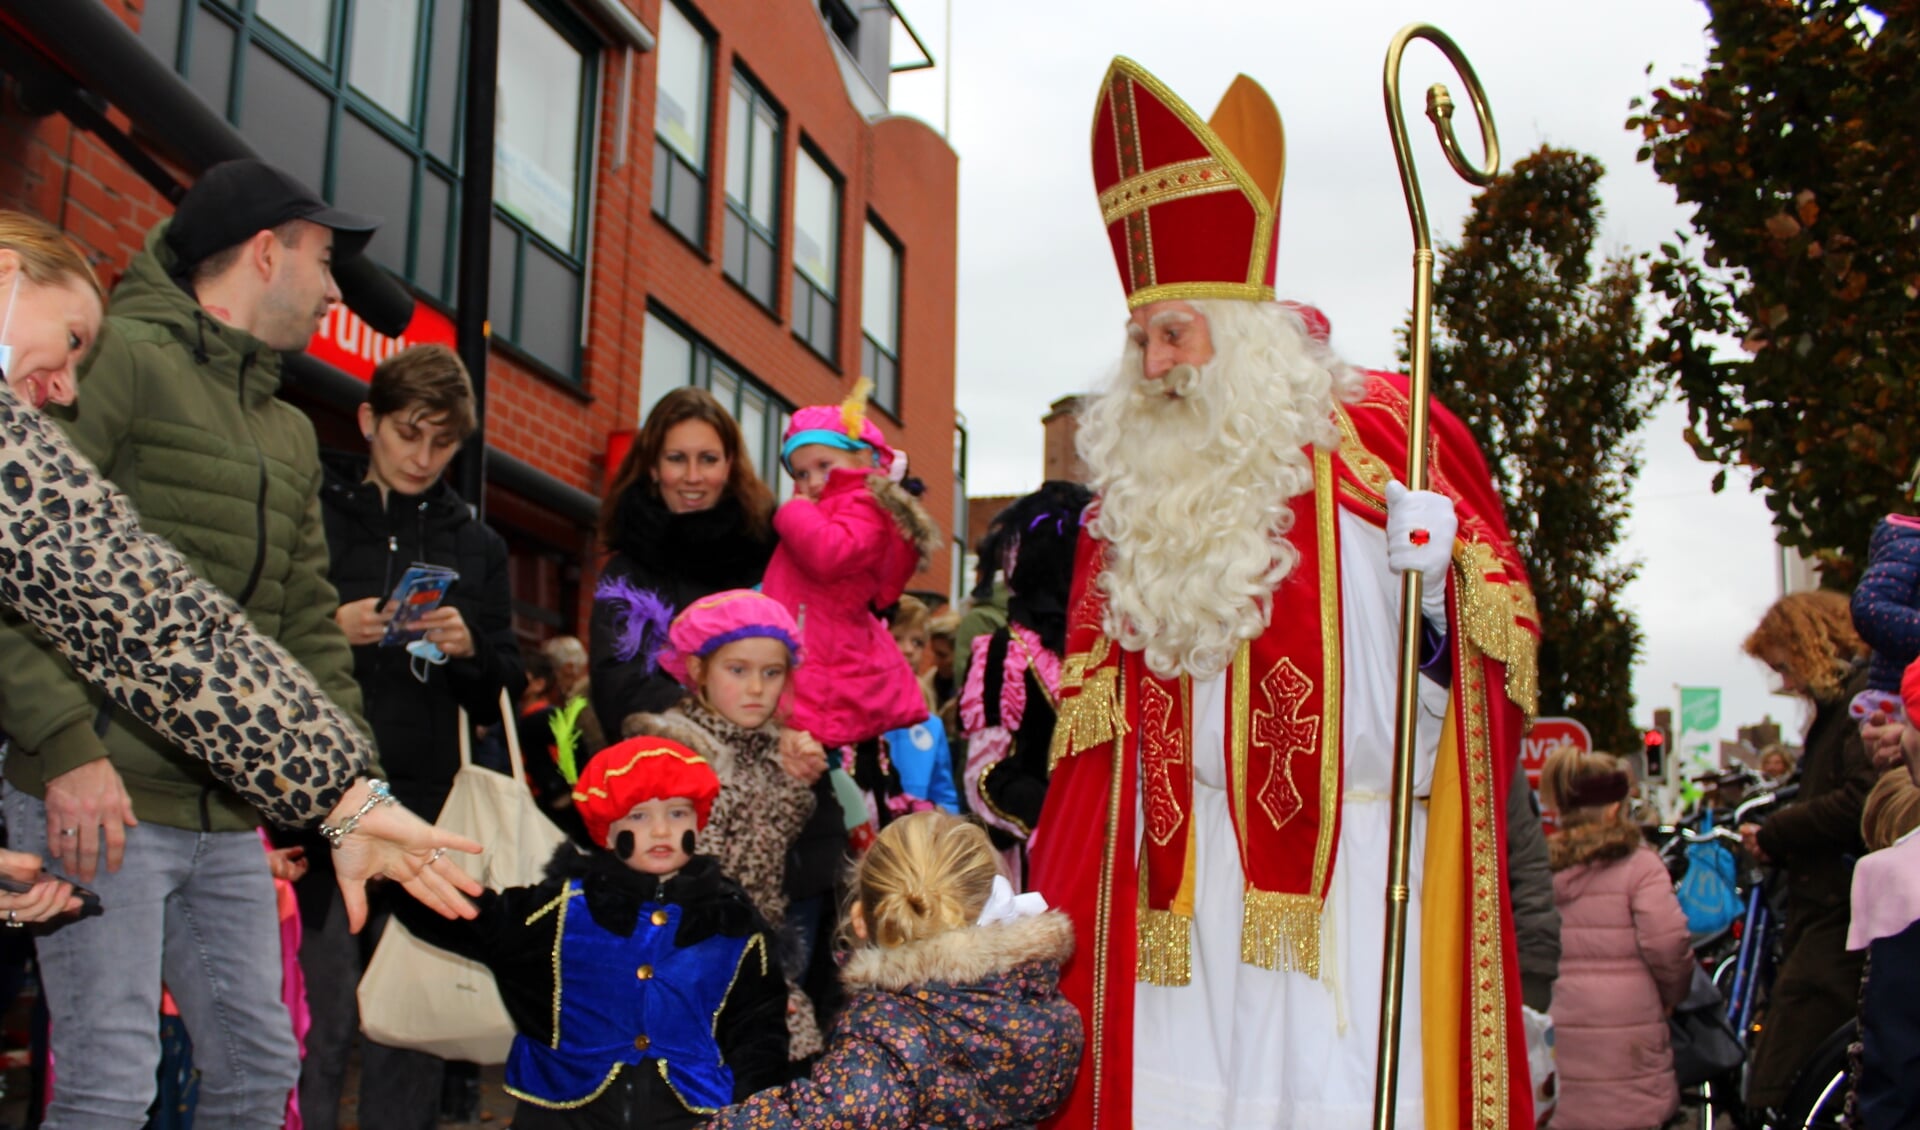 De intocht van Sinterklaas vorig jaar in Boskoop.